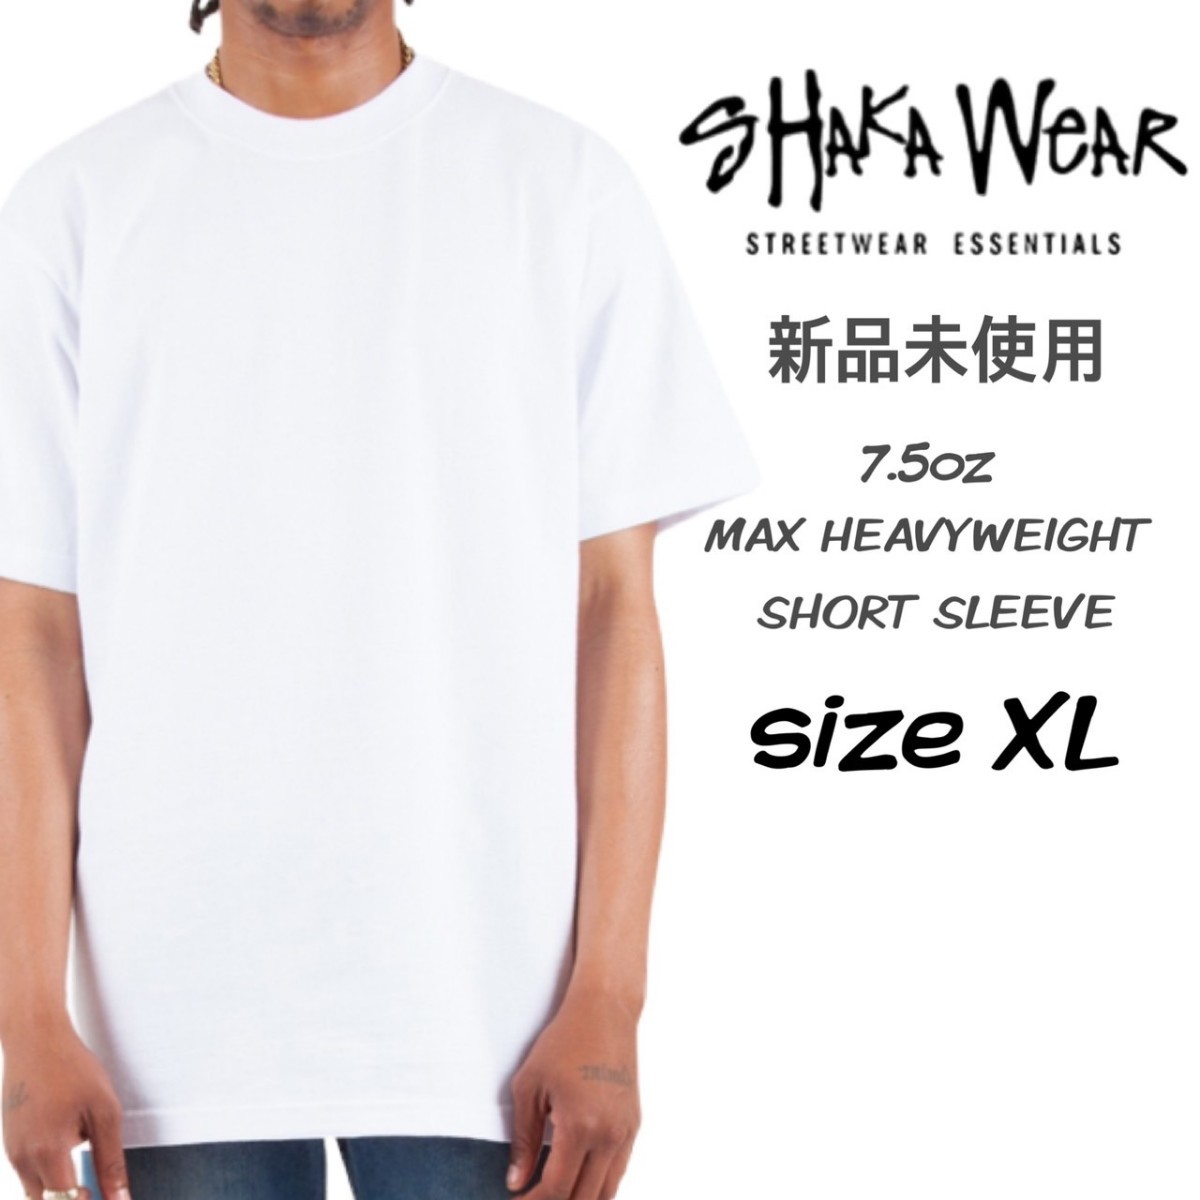 新品未使用 シャカウェア 7.5 マックスヘビーウェイト 無地 Tシャツ 白 XLサイズ ホワイト SHAKA WEAR MAX HEAVYWEIGHT S/S_画像1